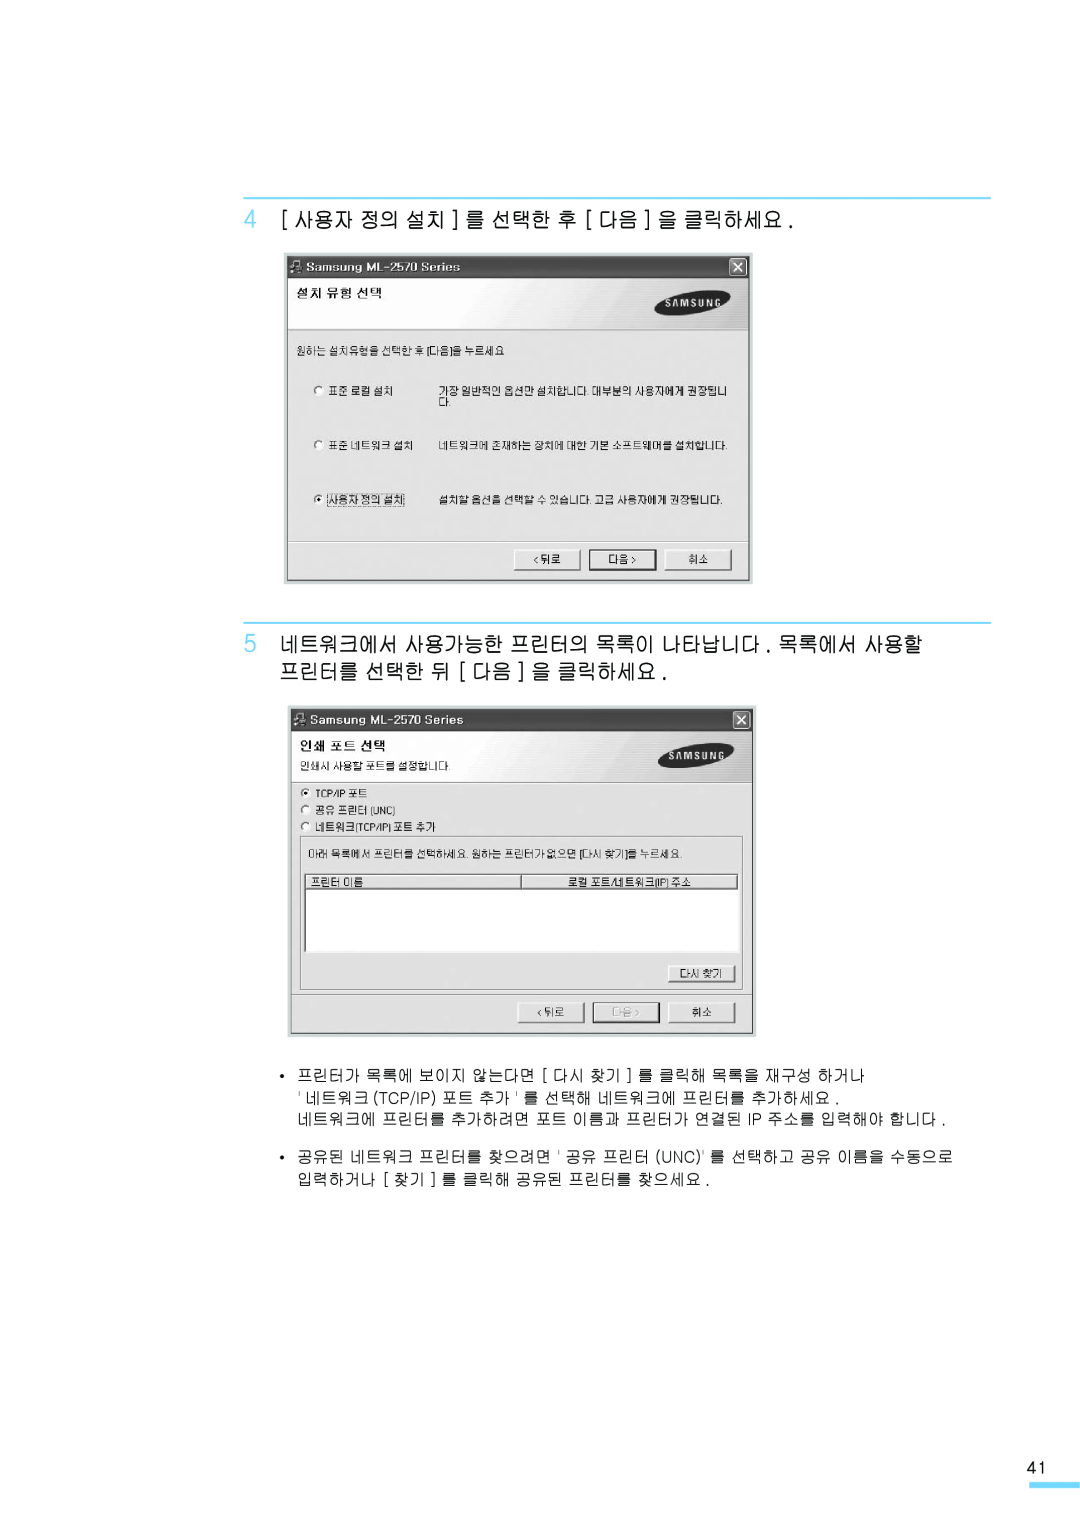 Samsung ML-2571N manual 4 사용자 정의 설치 를 선택한 후 다음 을 클릭하세요, 5 네트워크에서 사용가능한 프린터의 목록이 나타납니다 . 목록에서 사용할 프린터를 선택한 뒤 다음 을 클릭하세요 